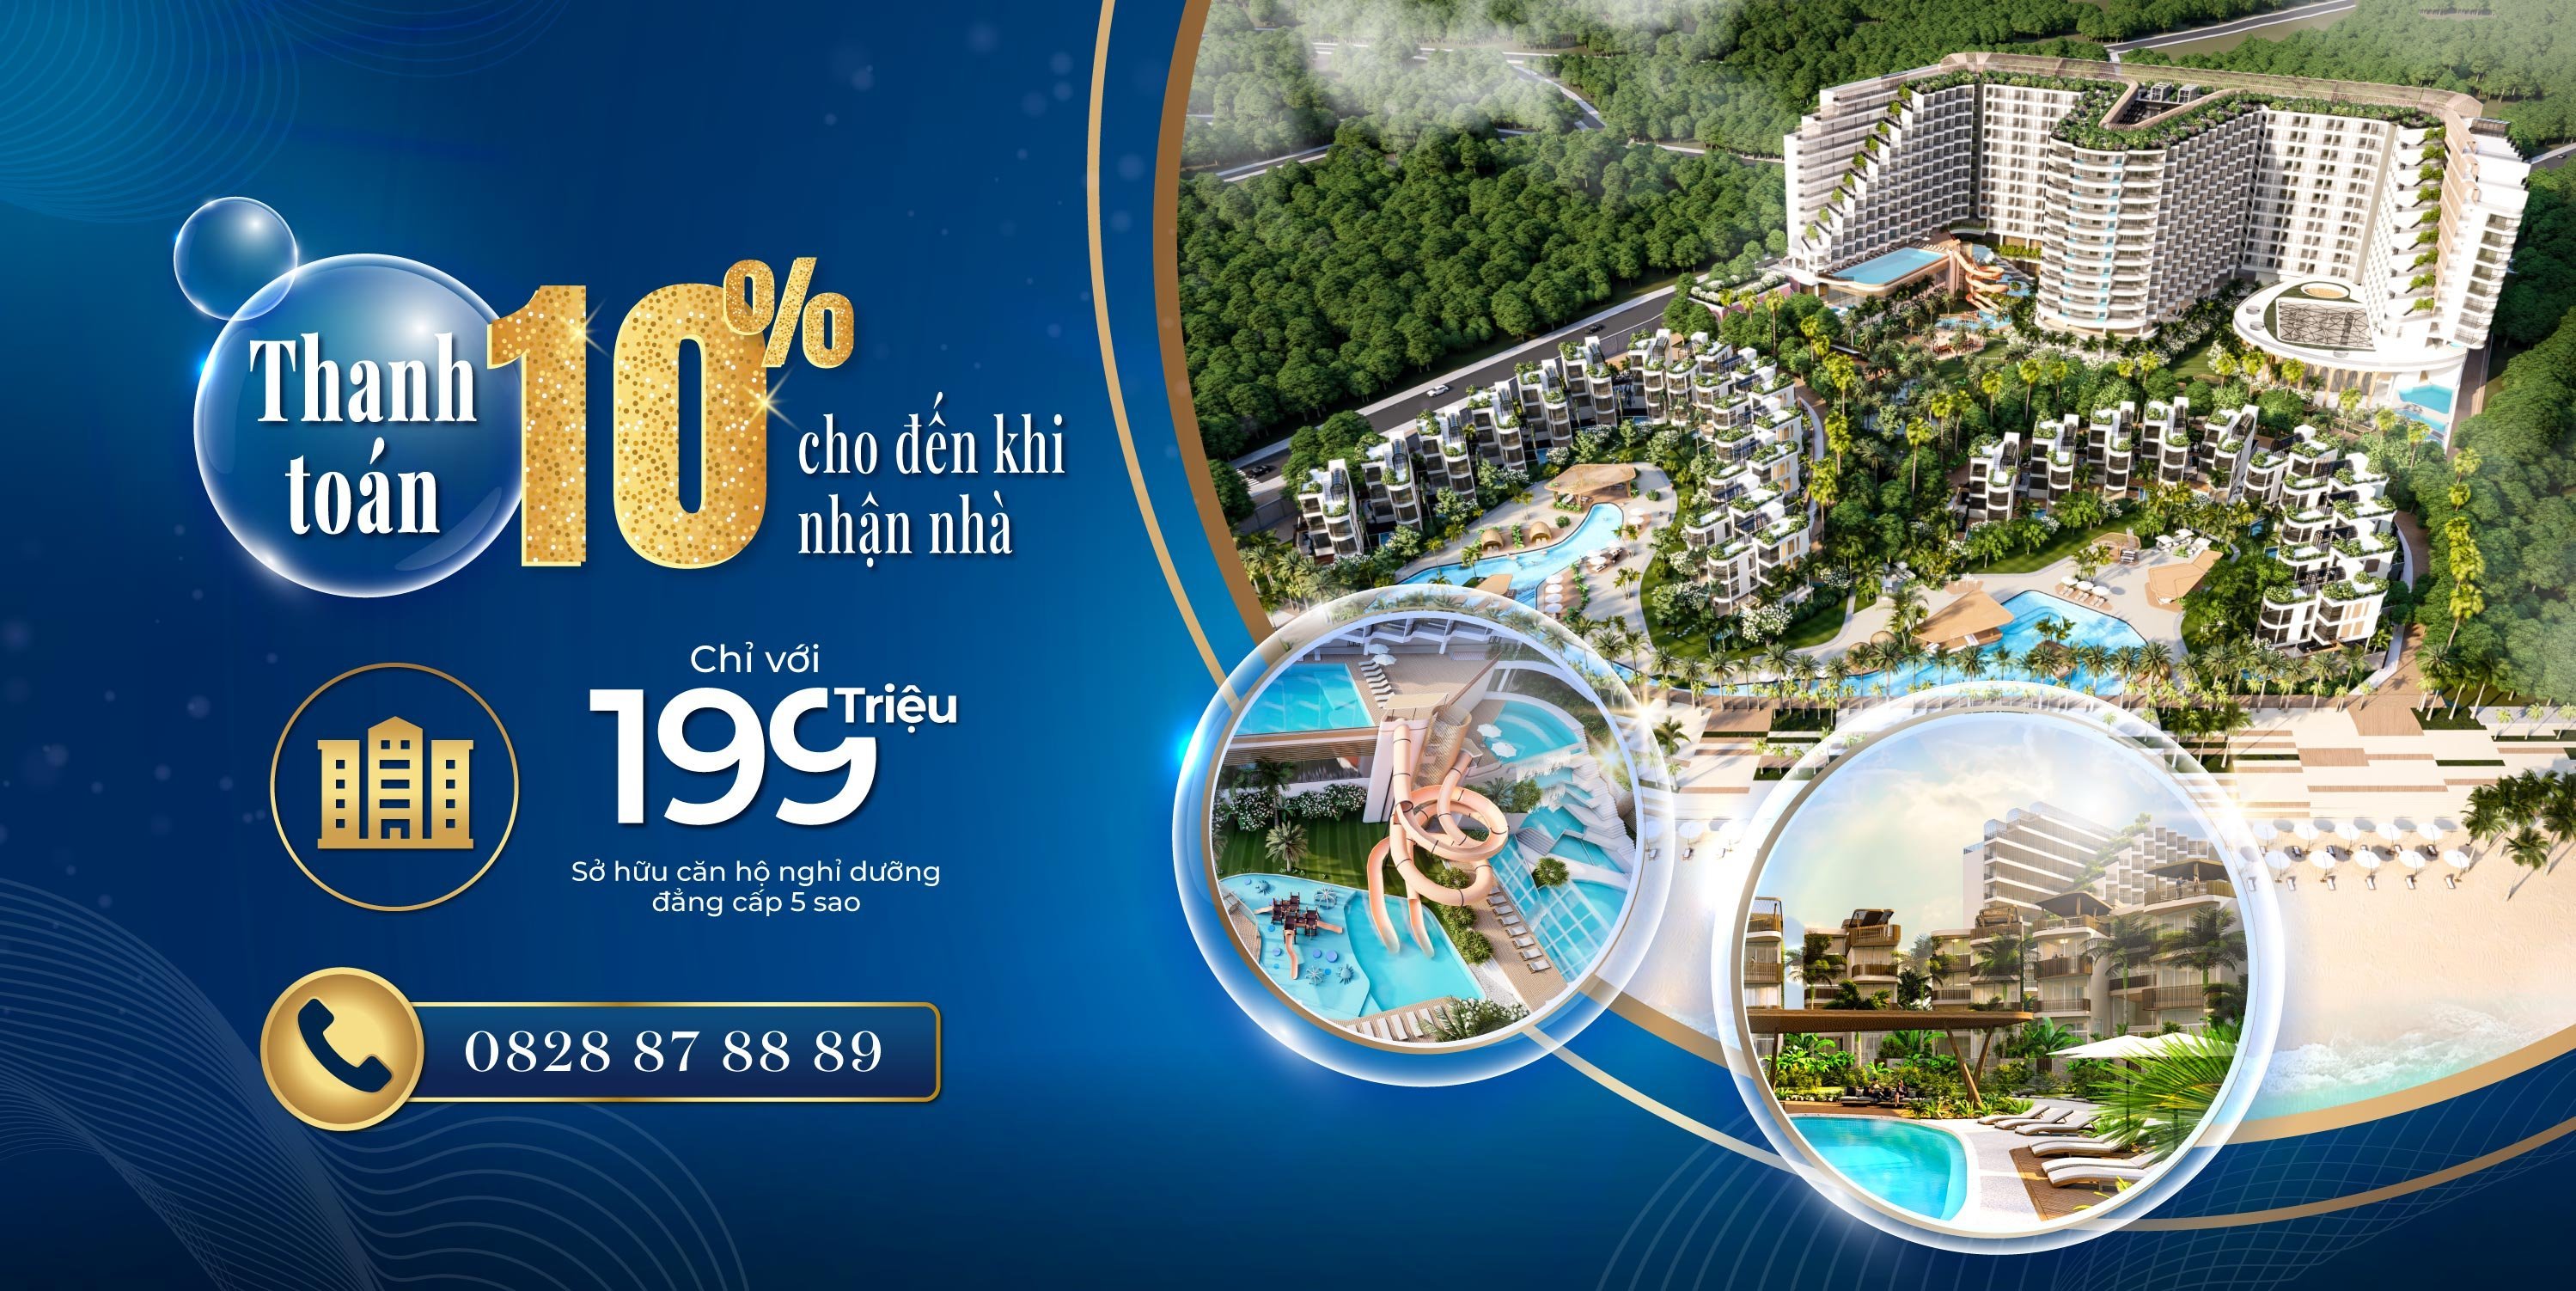 Chính sách thanh toán 10% giúp nhiều khách hàng dễ dàng sở hữu Charm Resort Long Hải